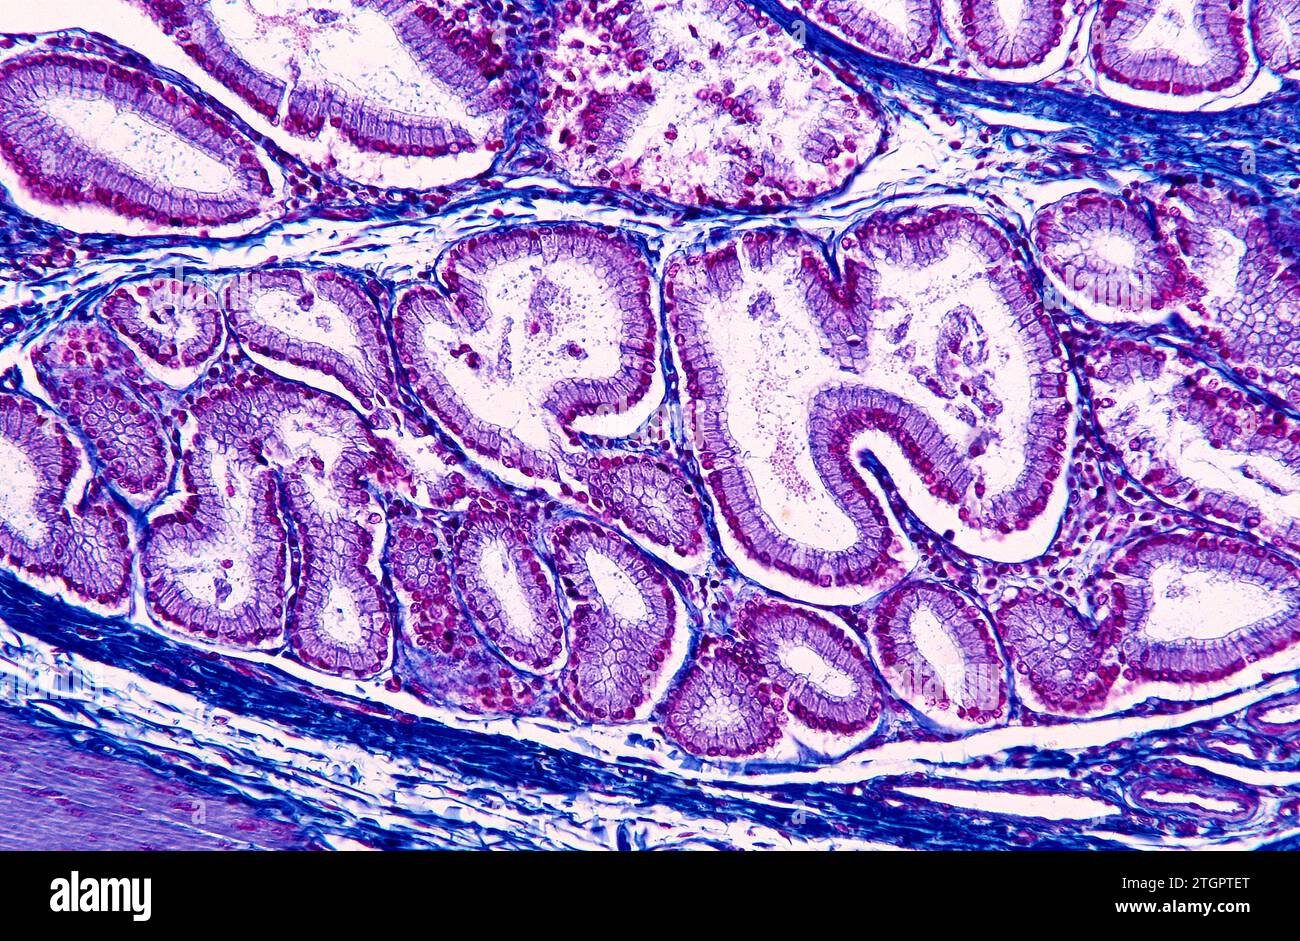 Sezione della ghiandola salivare che mostra lobuli e acini. Fotomicrografia. Foto Stock